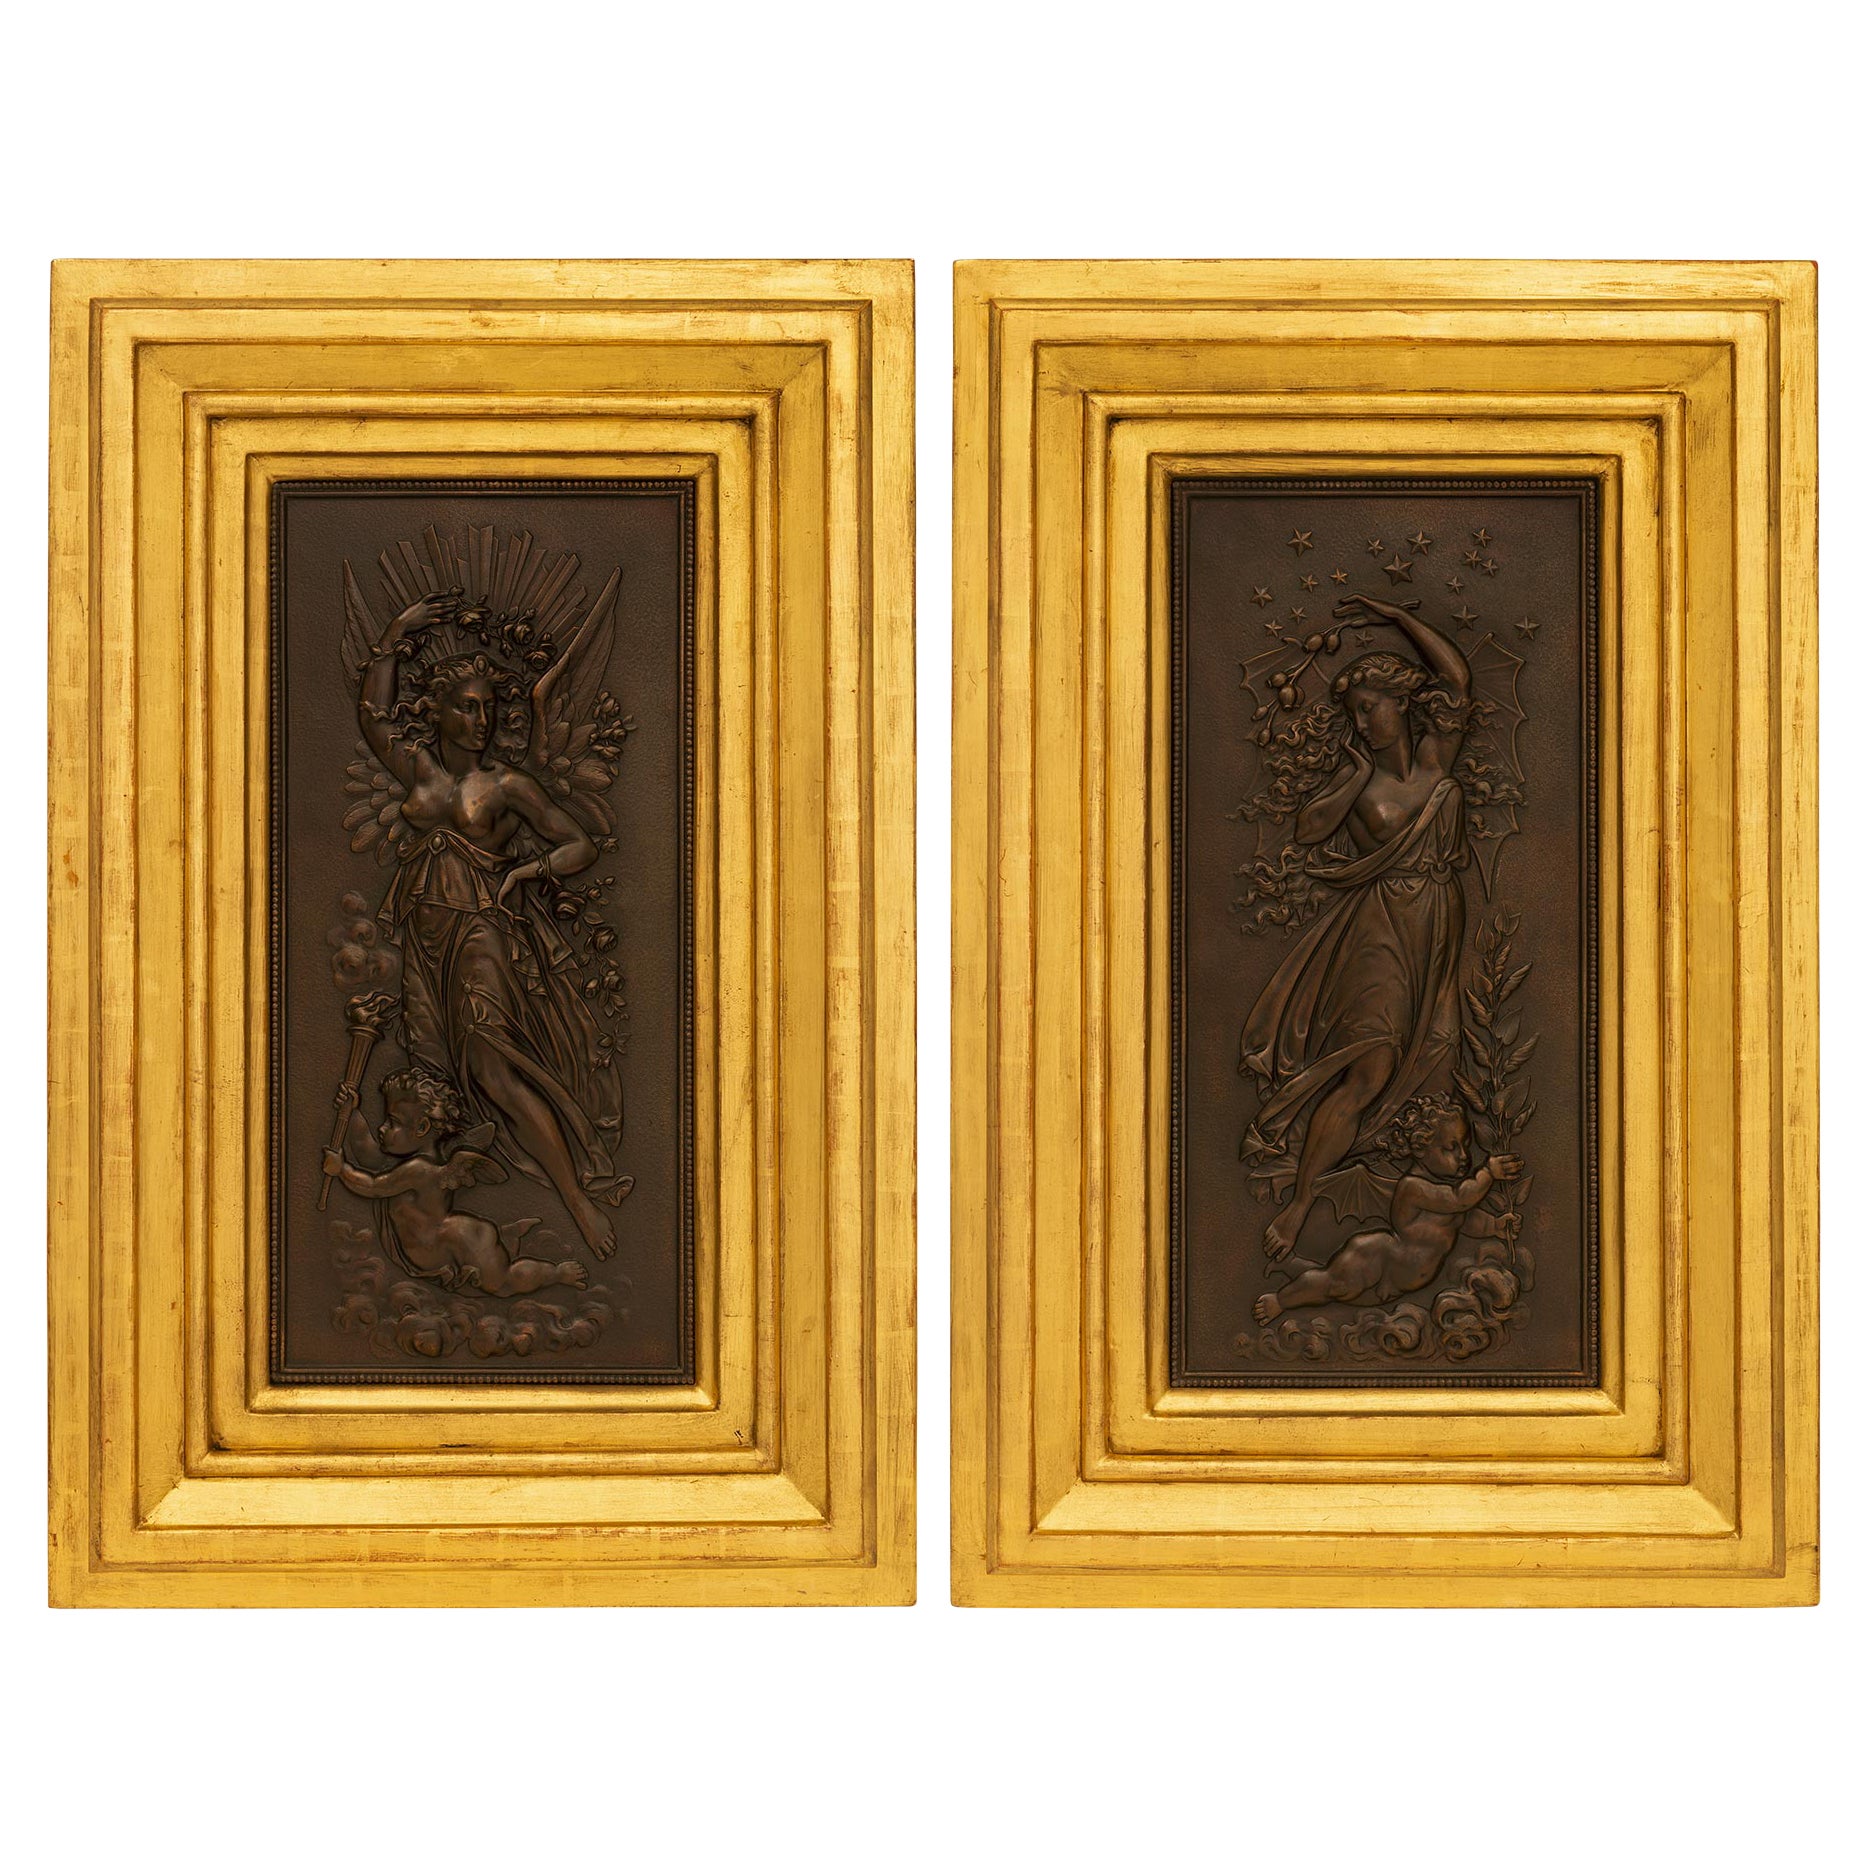 Paire de plaques murales en bronze et bois doré du 19e siècle de la période Belle Époque française